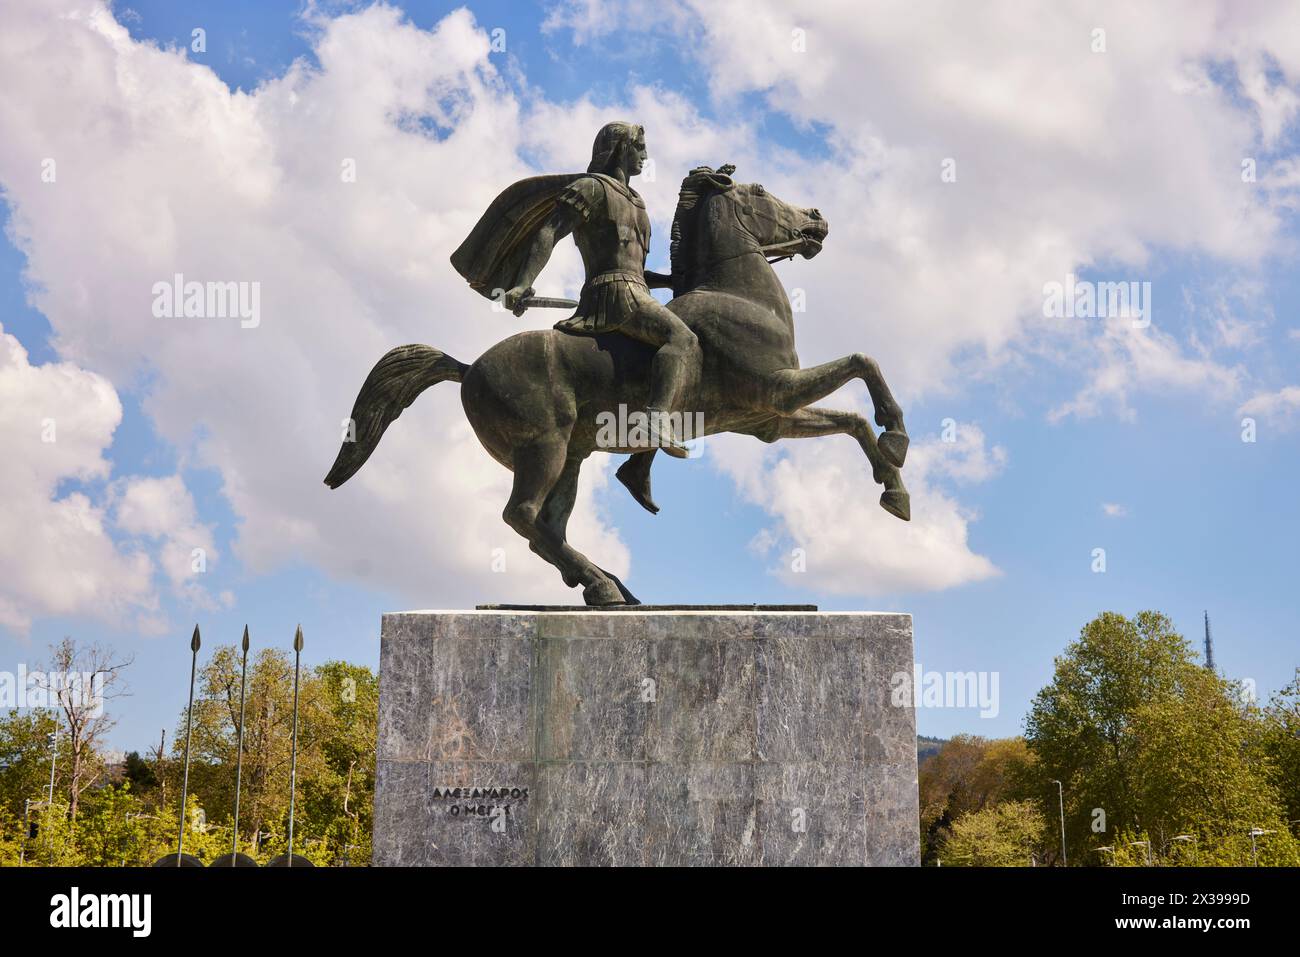 Salonicco, città greca della Macedonia, sul lungomare della Grecia settentrionale, statua di Alessandro Magno Foto Stock